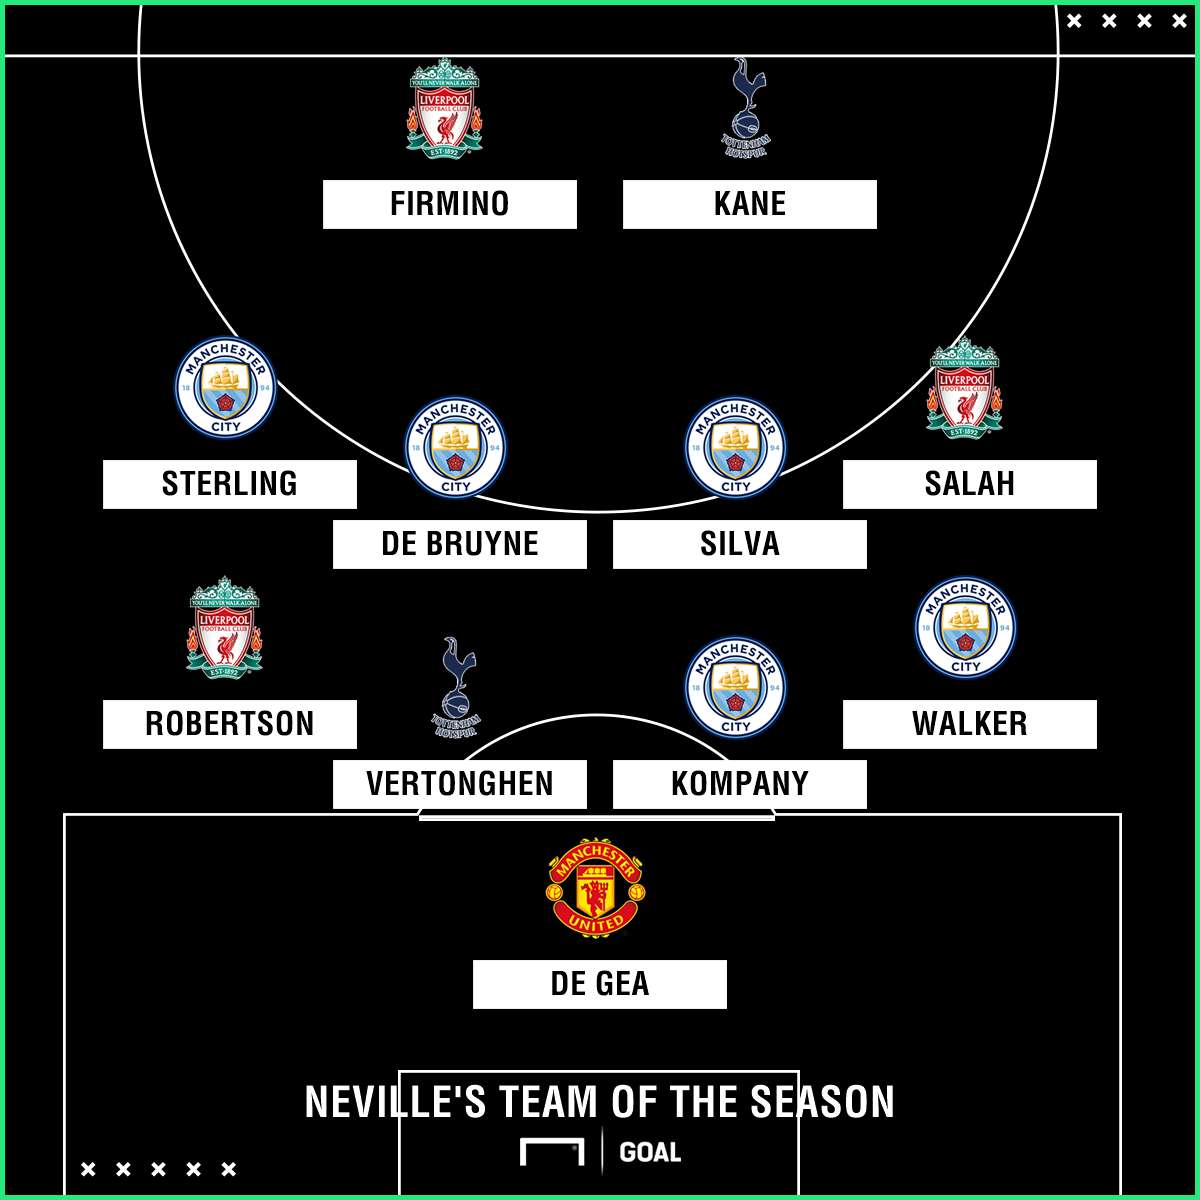 Gary Neville's Team of the Season